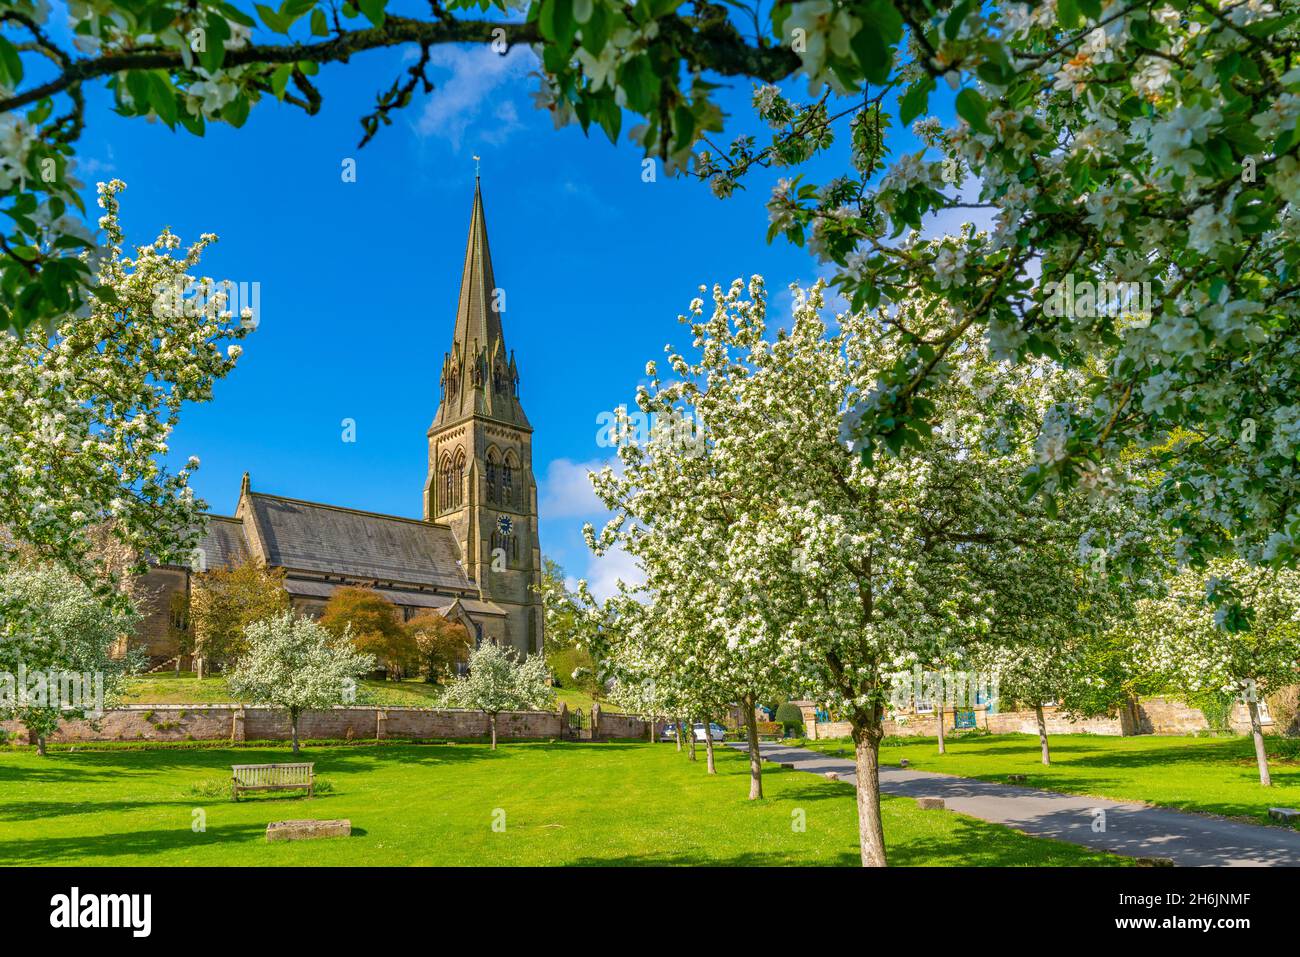 Vue sur l'église Saint-Pierre et la fleur de printemps, le village d'Edensor, le parc de Chatsworth, Bakewell, Derbyshire,Angleterre, Royaume-Uni, Europe Banque D'Images